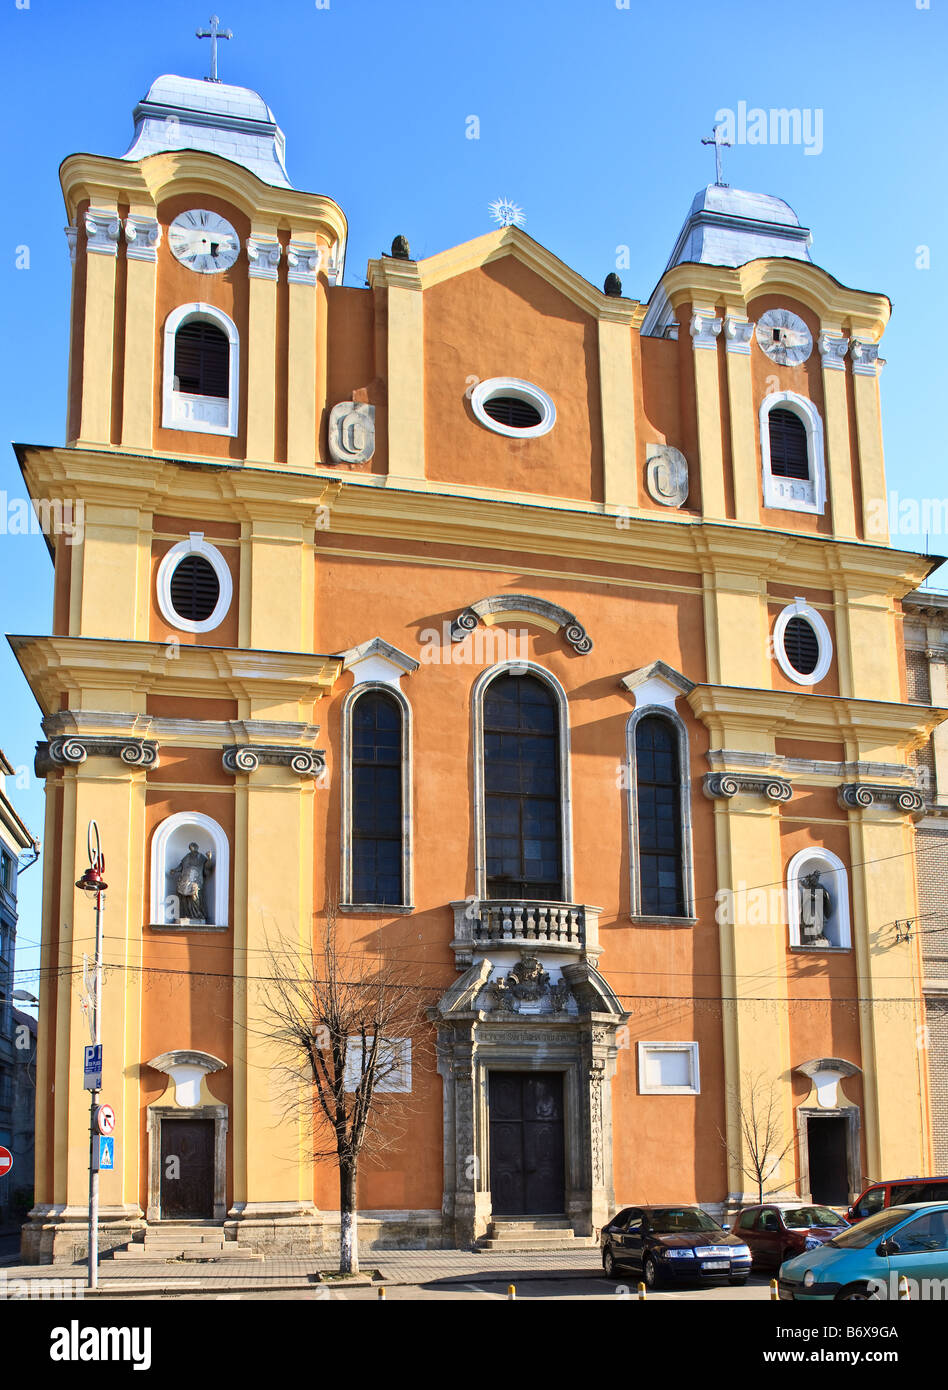 Baroque piarist church in Cluj Napoca, Transylvania, Romania. Stock Photo